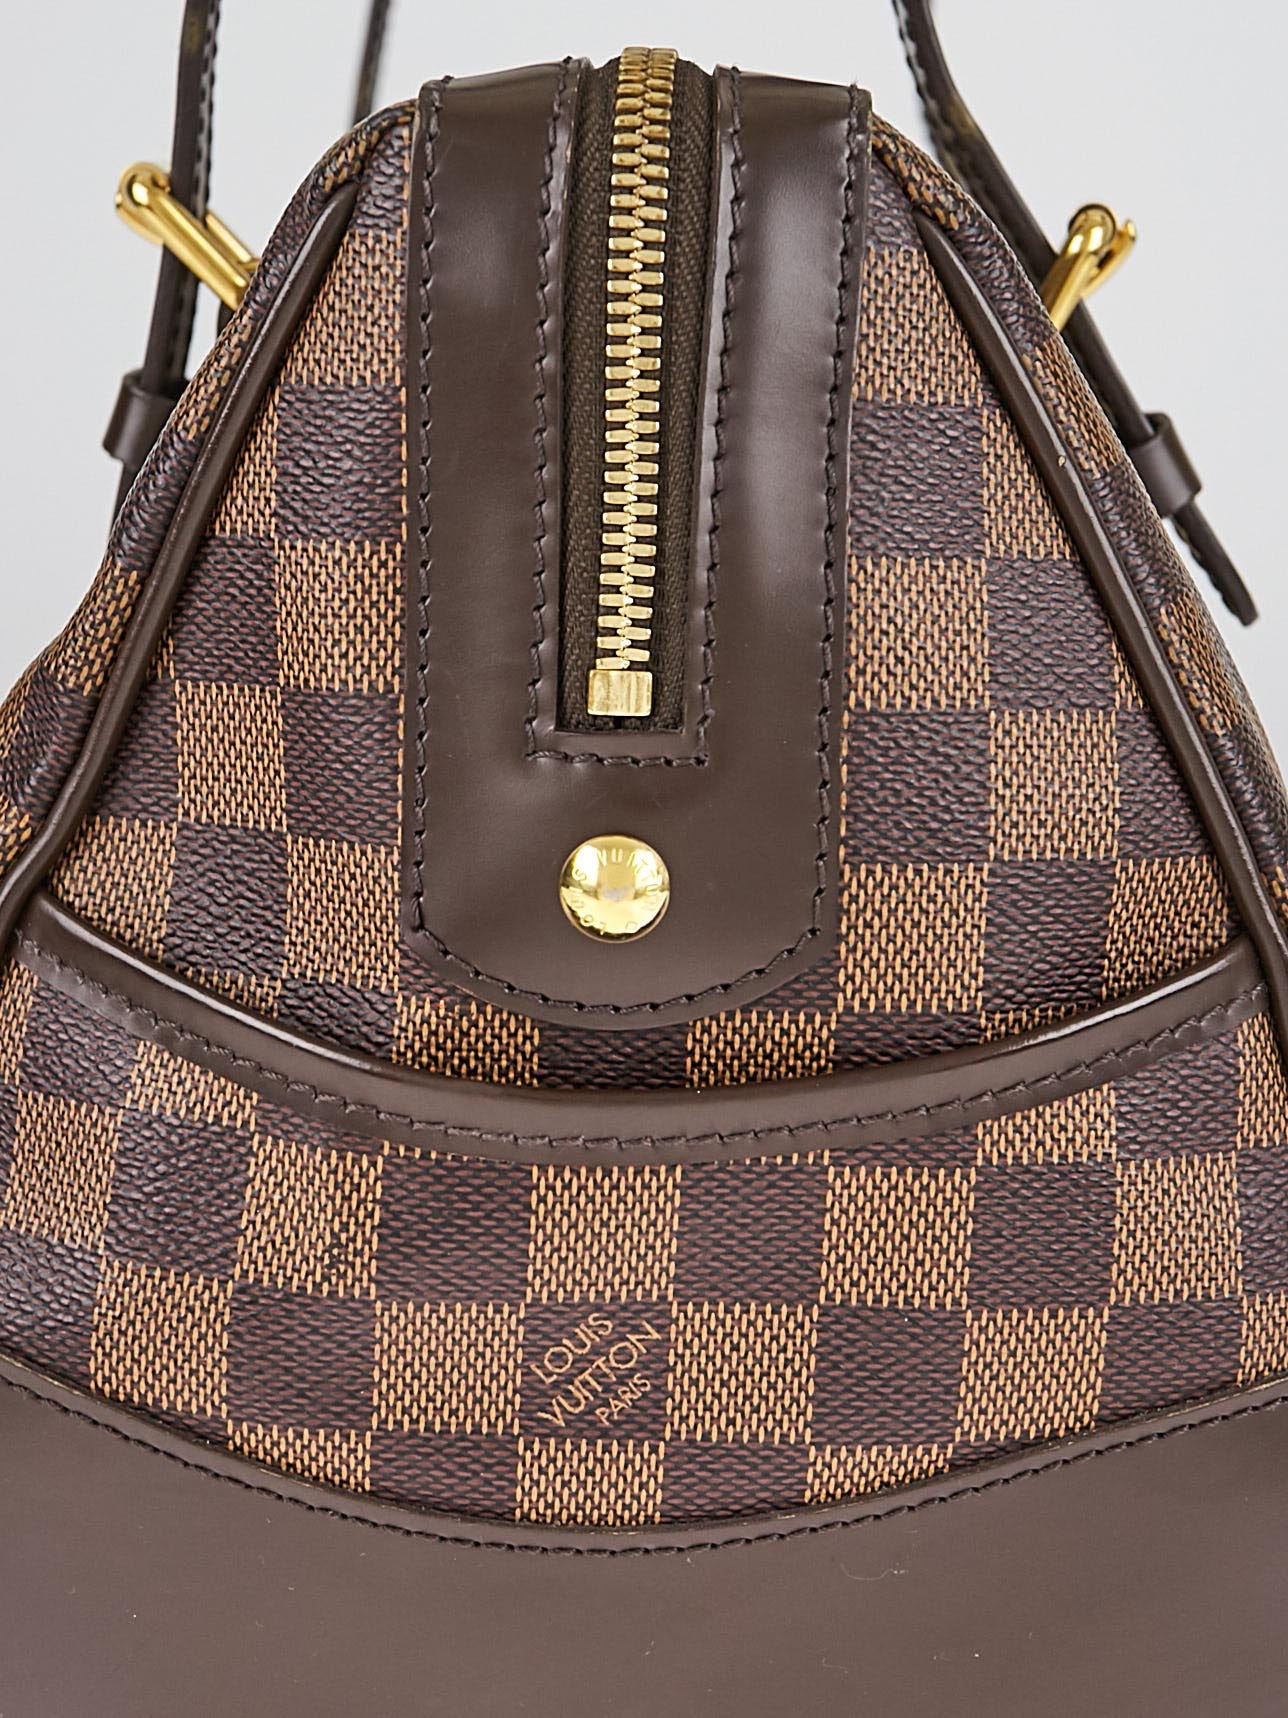 Authentic Louis Vuitton Berkeley Damier Ebene Canvas Handbag-Excellent  Condition